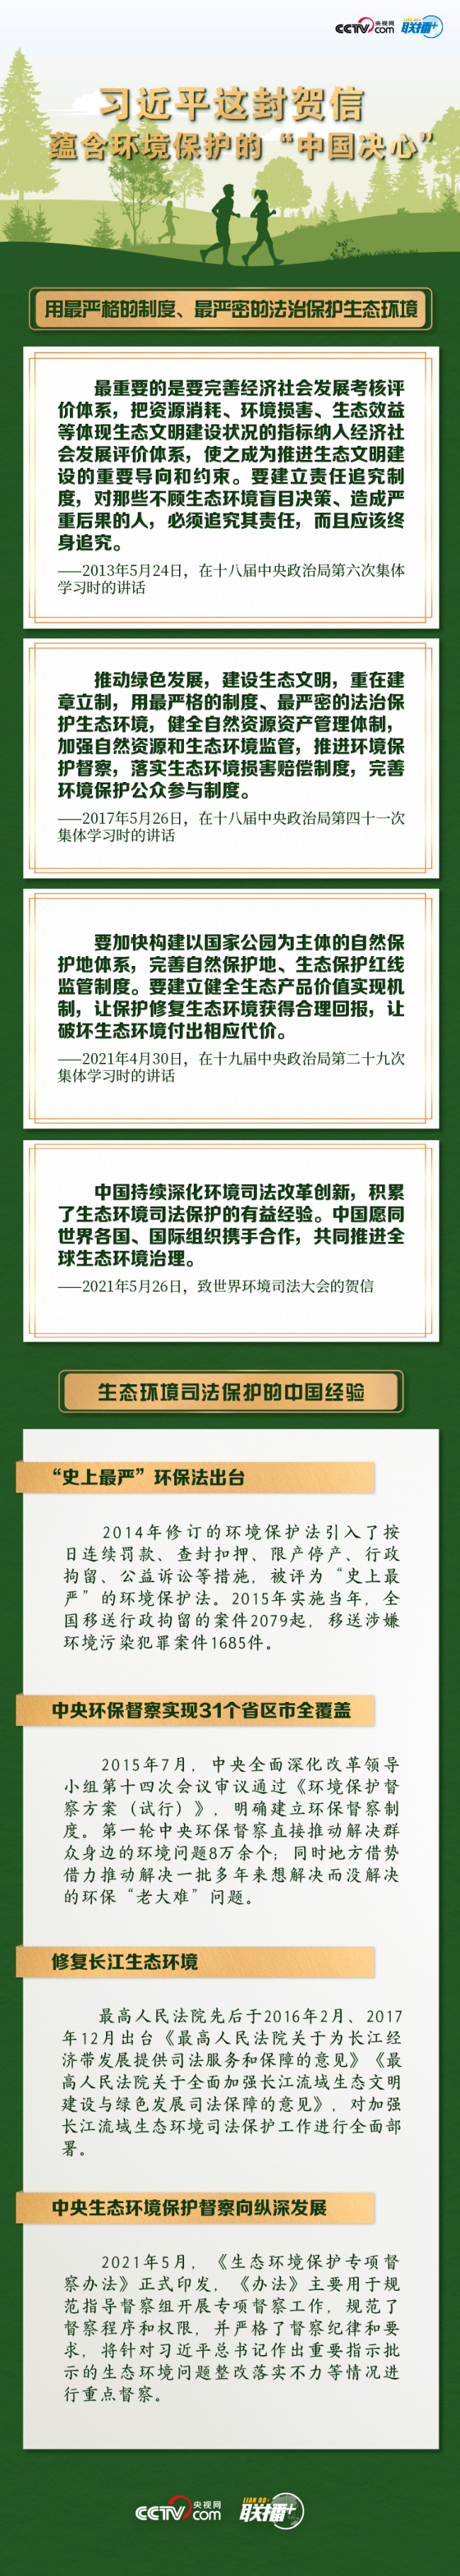 联播+丨习近平这封贺信 蕴含环境保护的“中国决心”